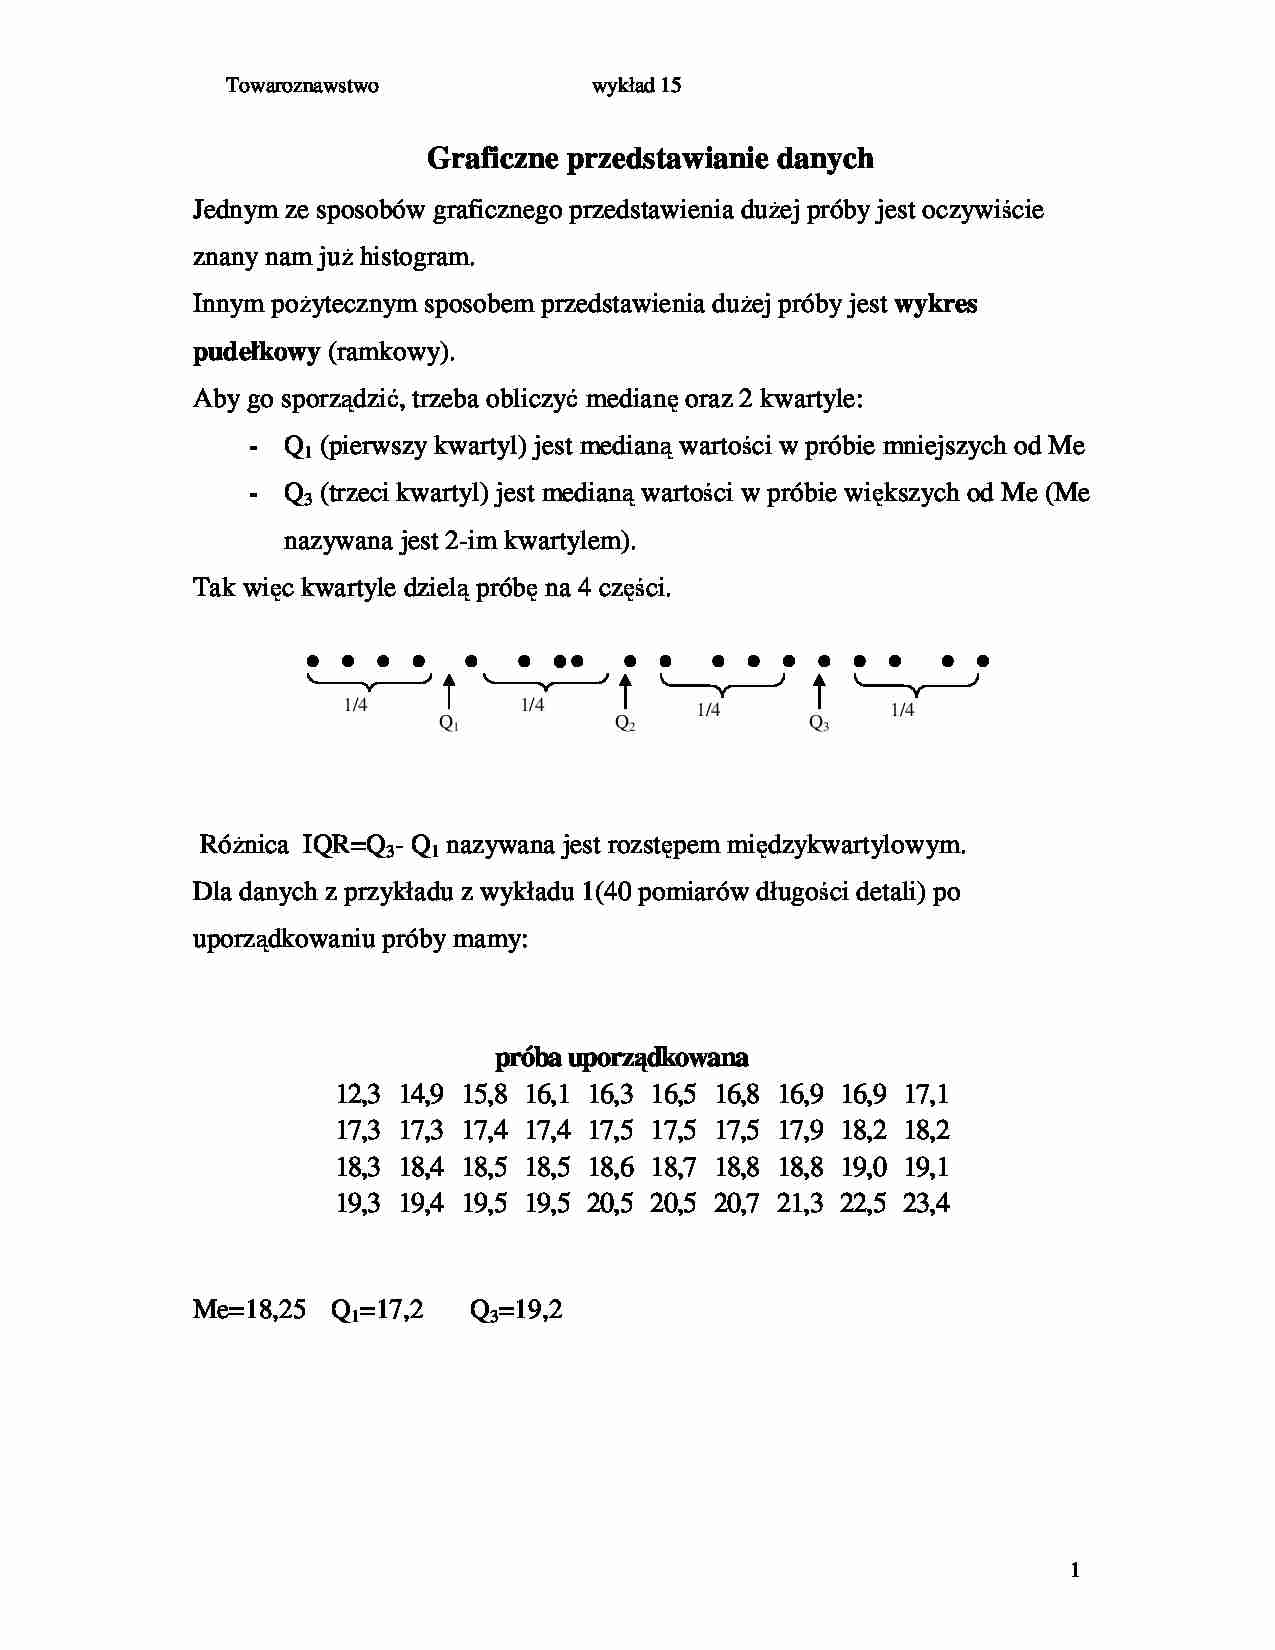 Graficzne przedstawianie danych (SEM IV) - strona 1